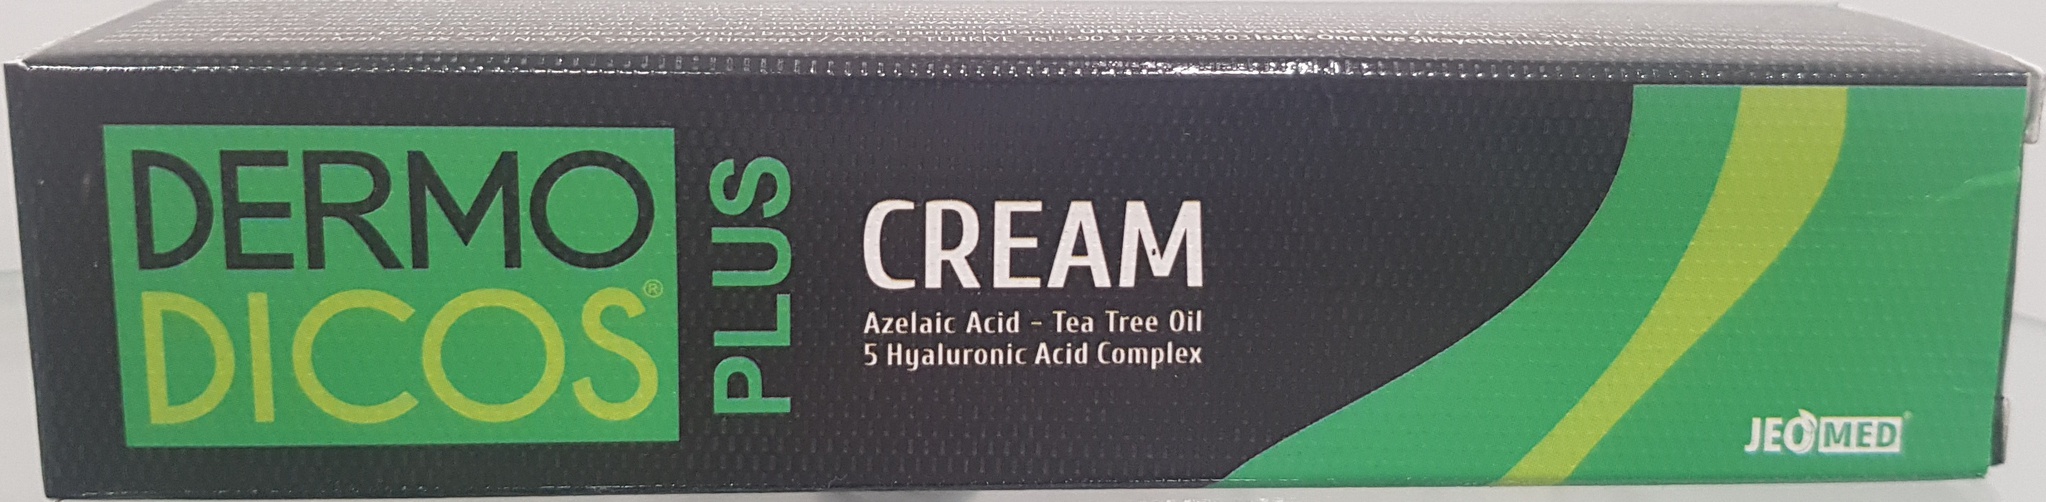 TTO Thermal Dermodicos Plus Cream